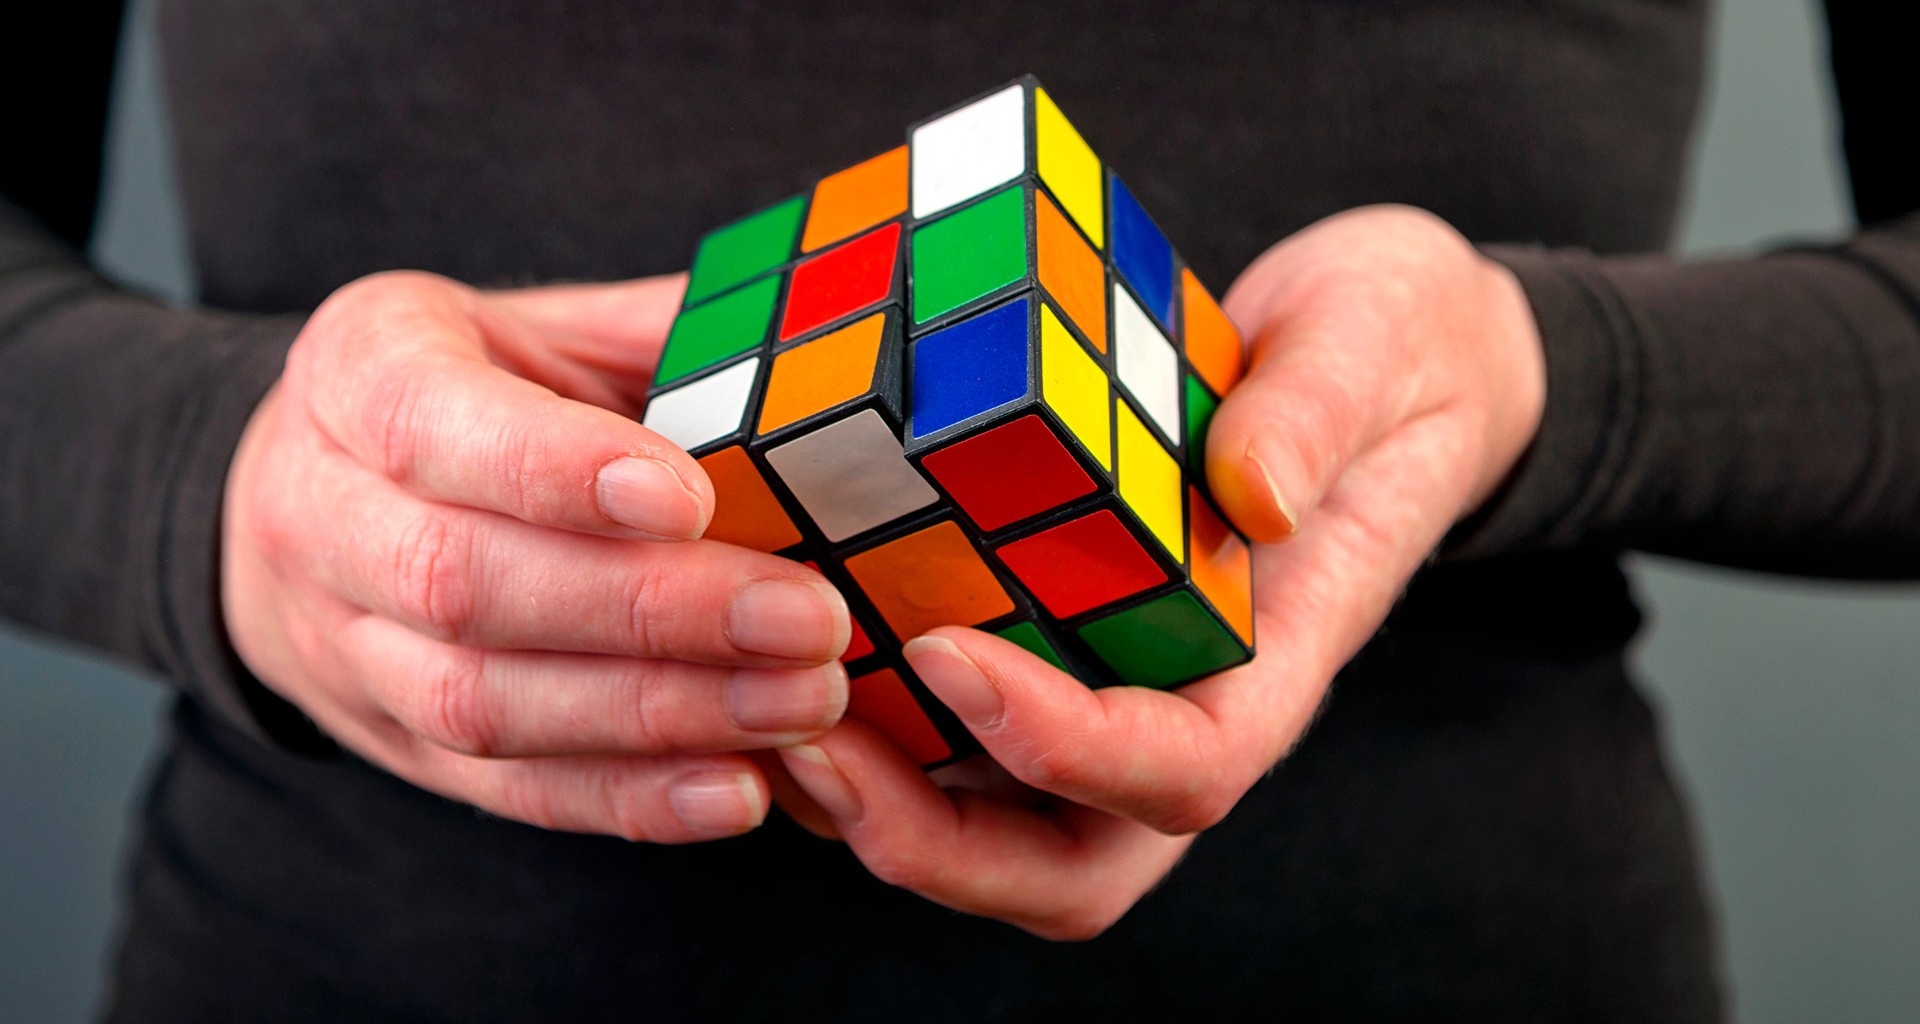 Calígrafo alias escucha Cómo resolver el cubo de Rubik, paso a paso y con pocos movimientos? –  Diario La Página